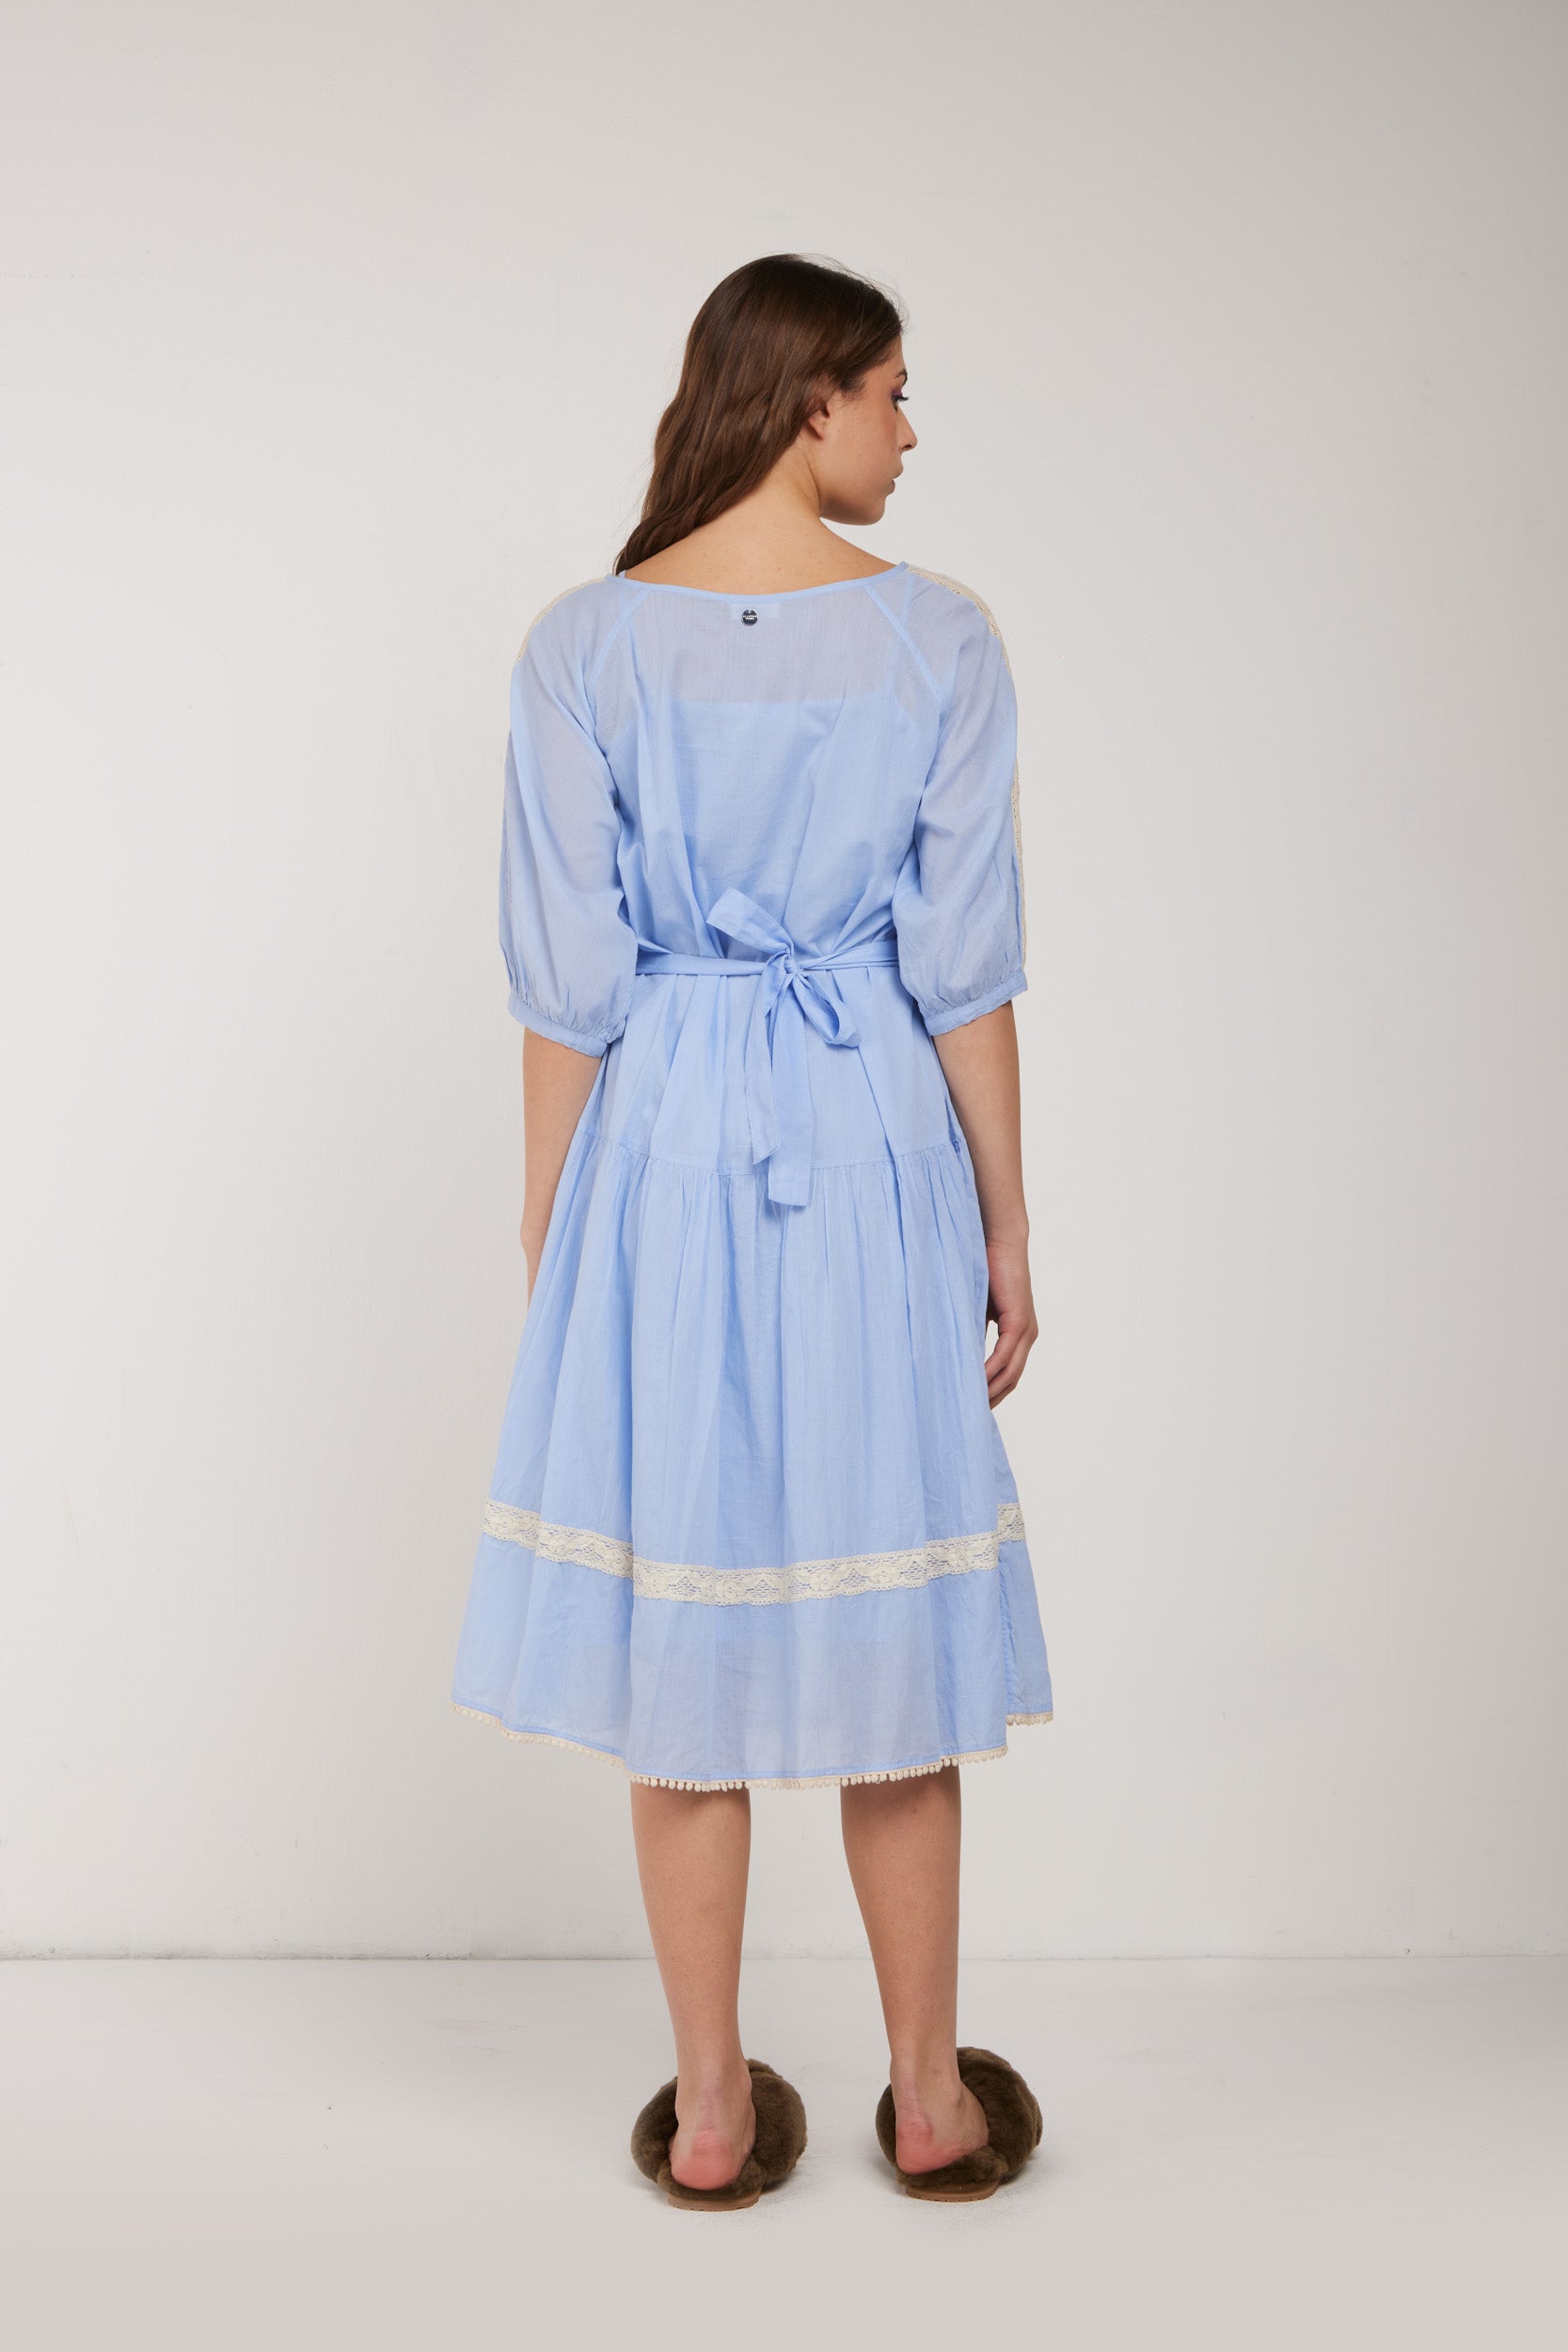 TWINSET Chemisier-Kleid in Hellblau und Spitze